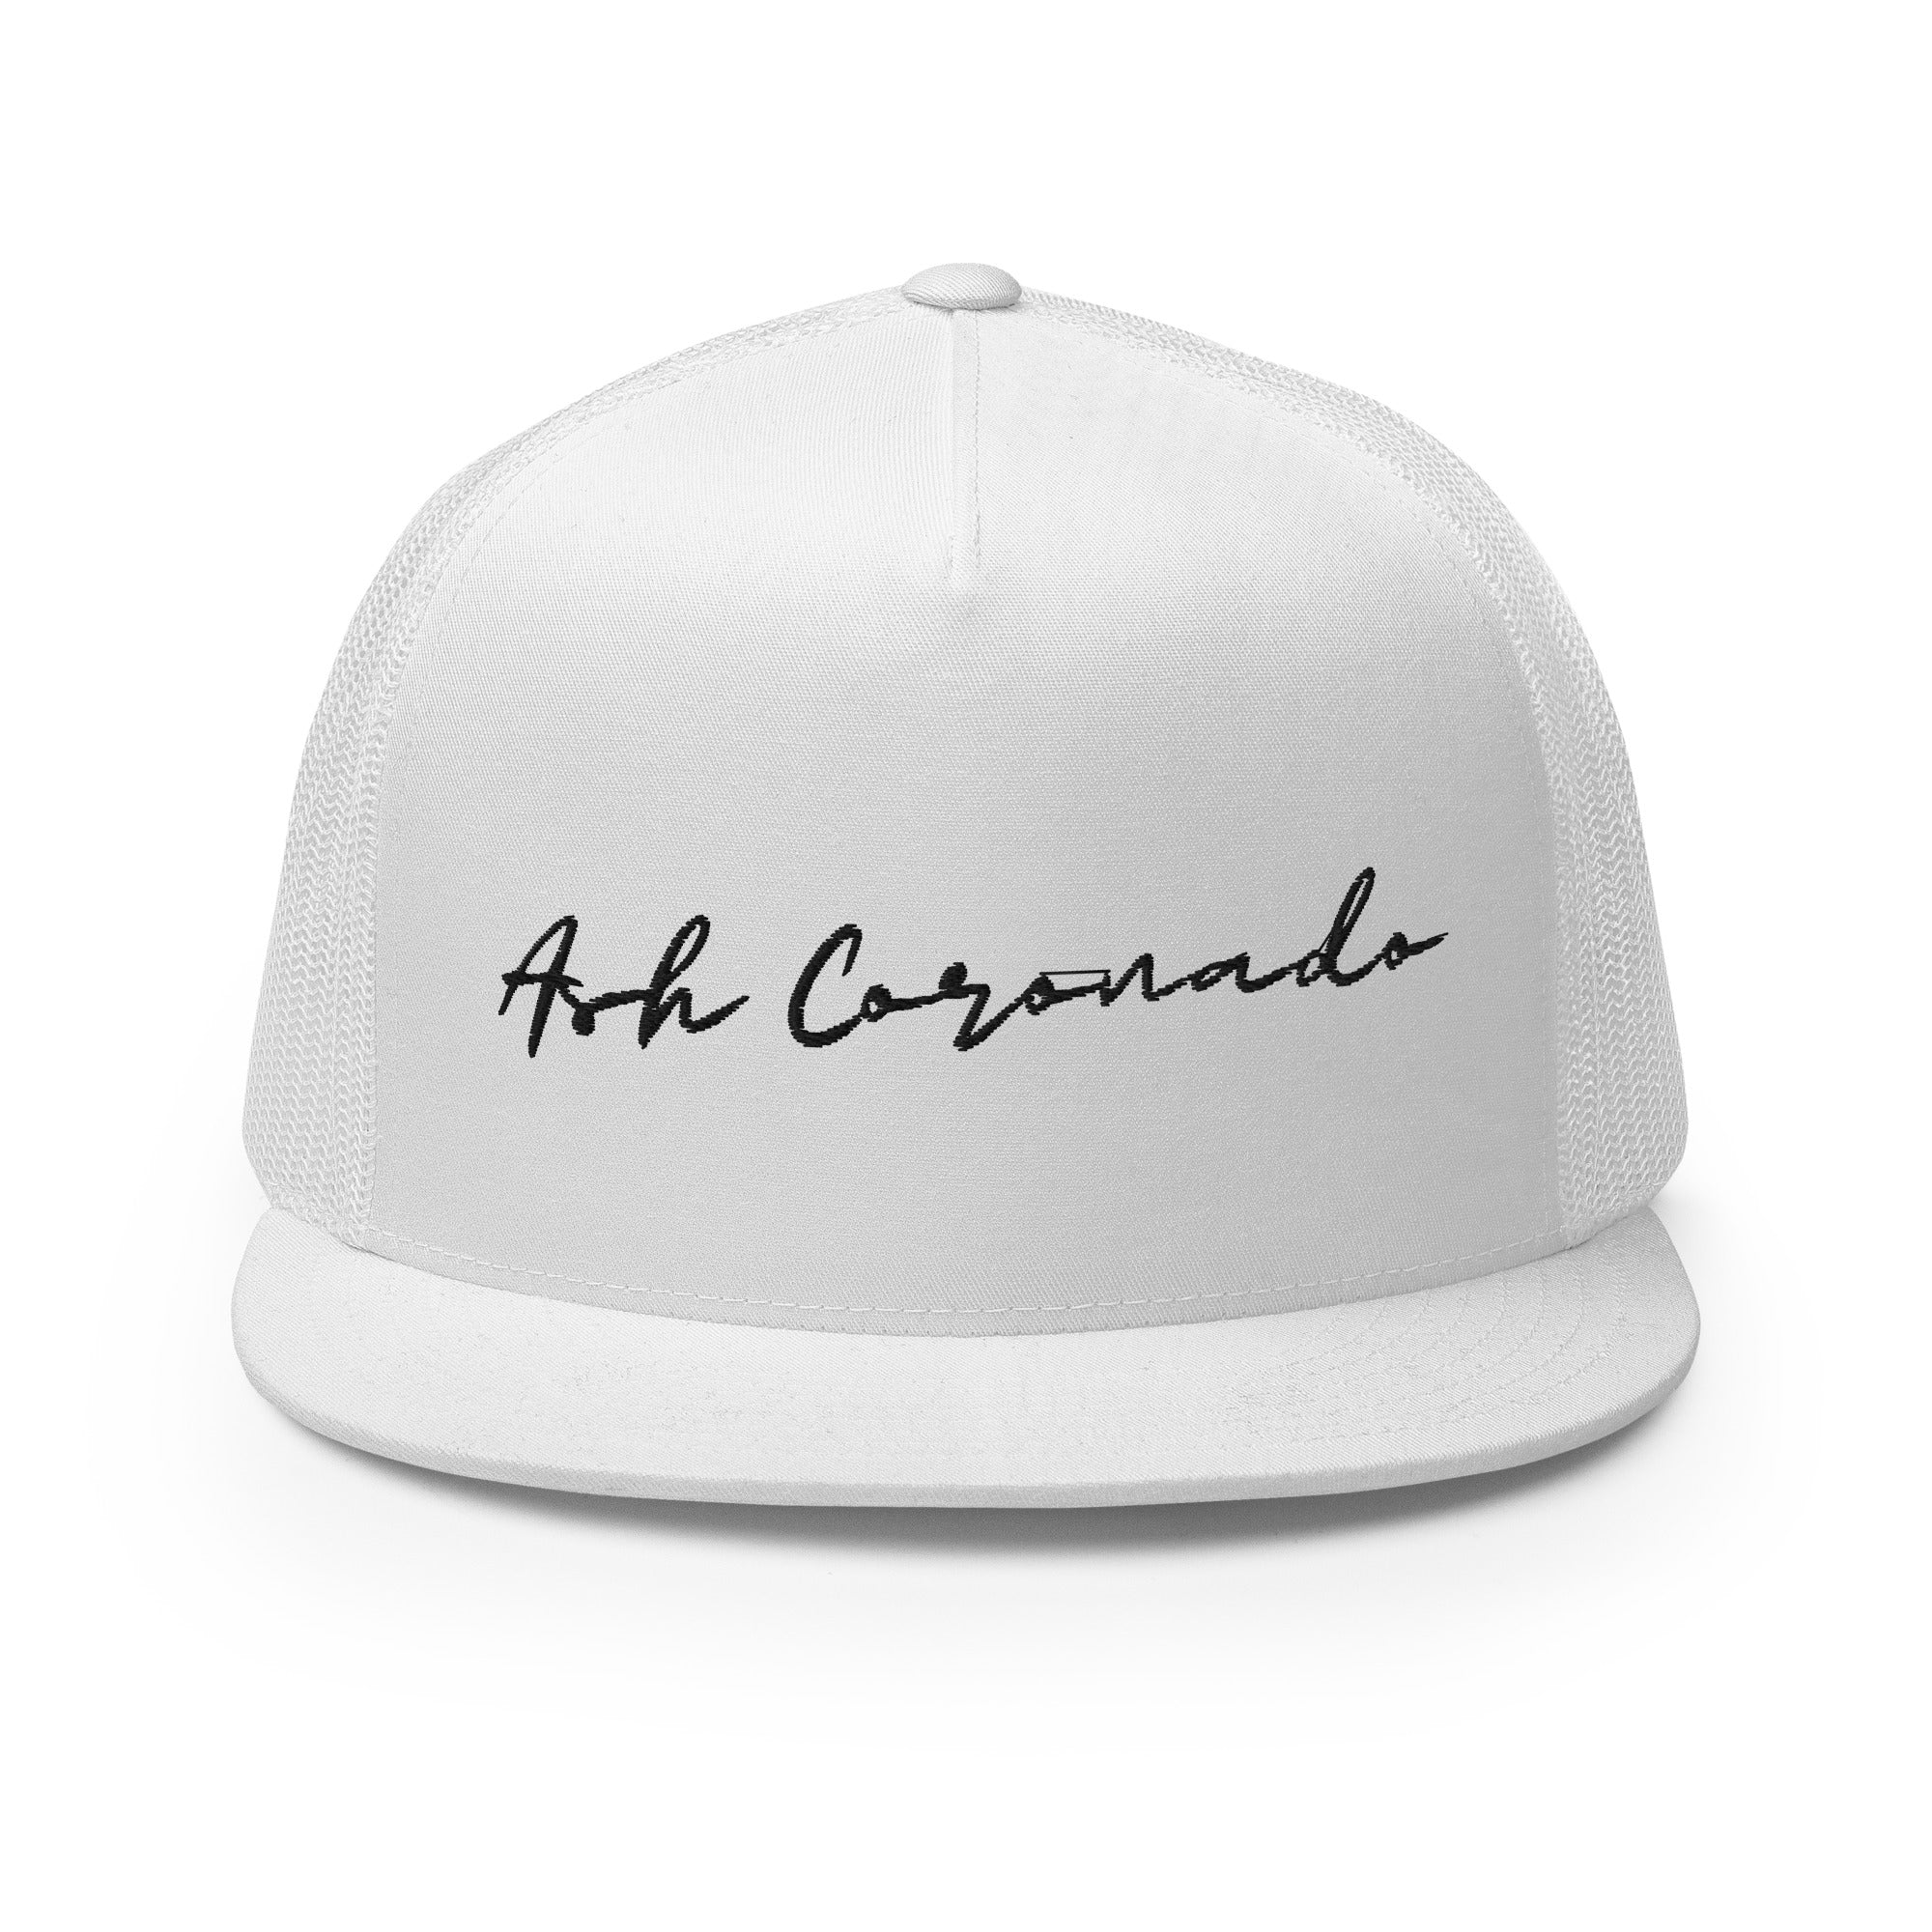 Ash Coronado - Trucker Cap